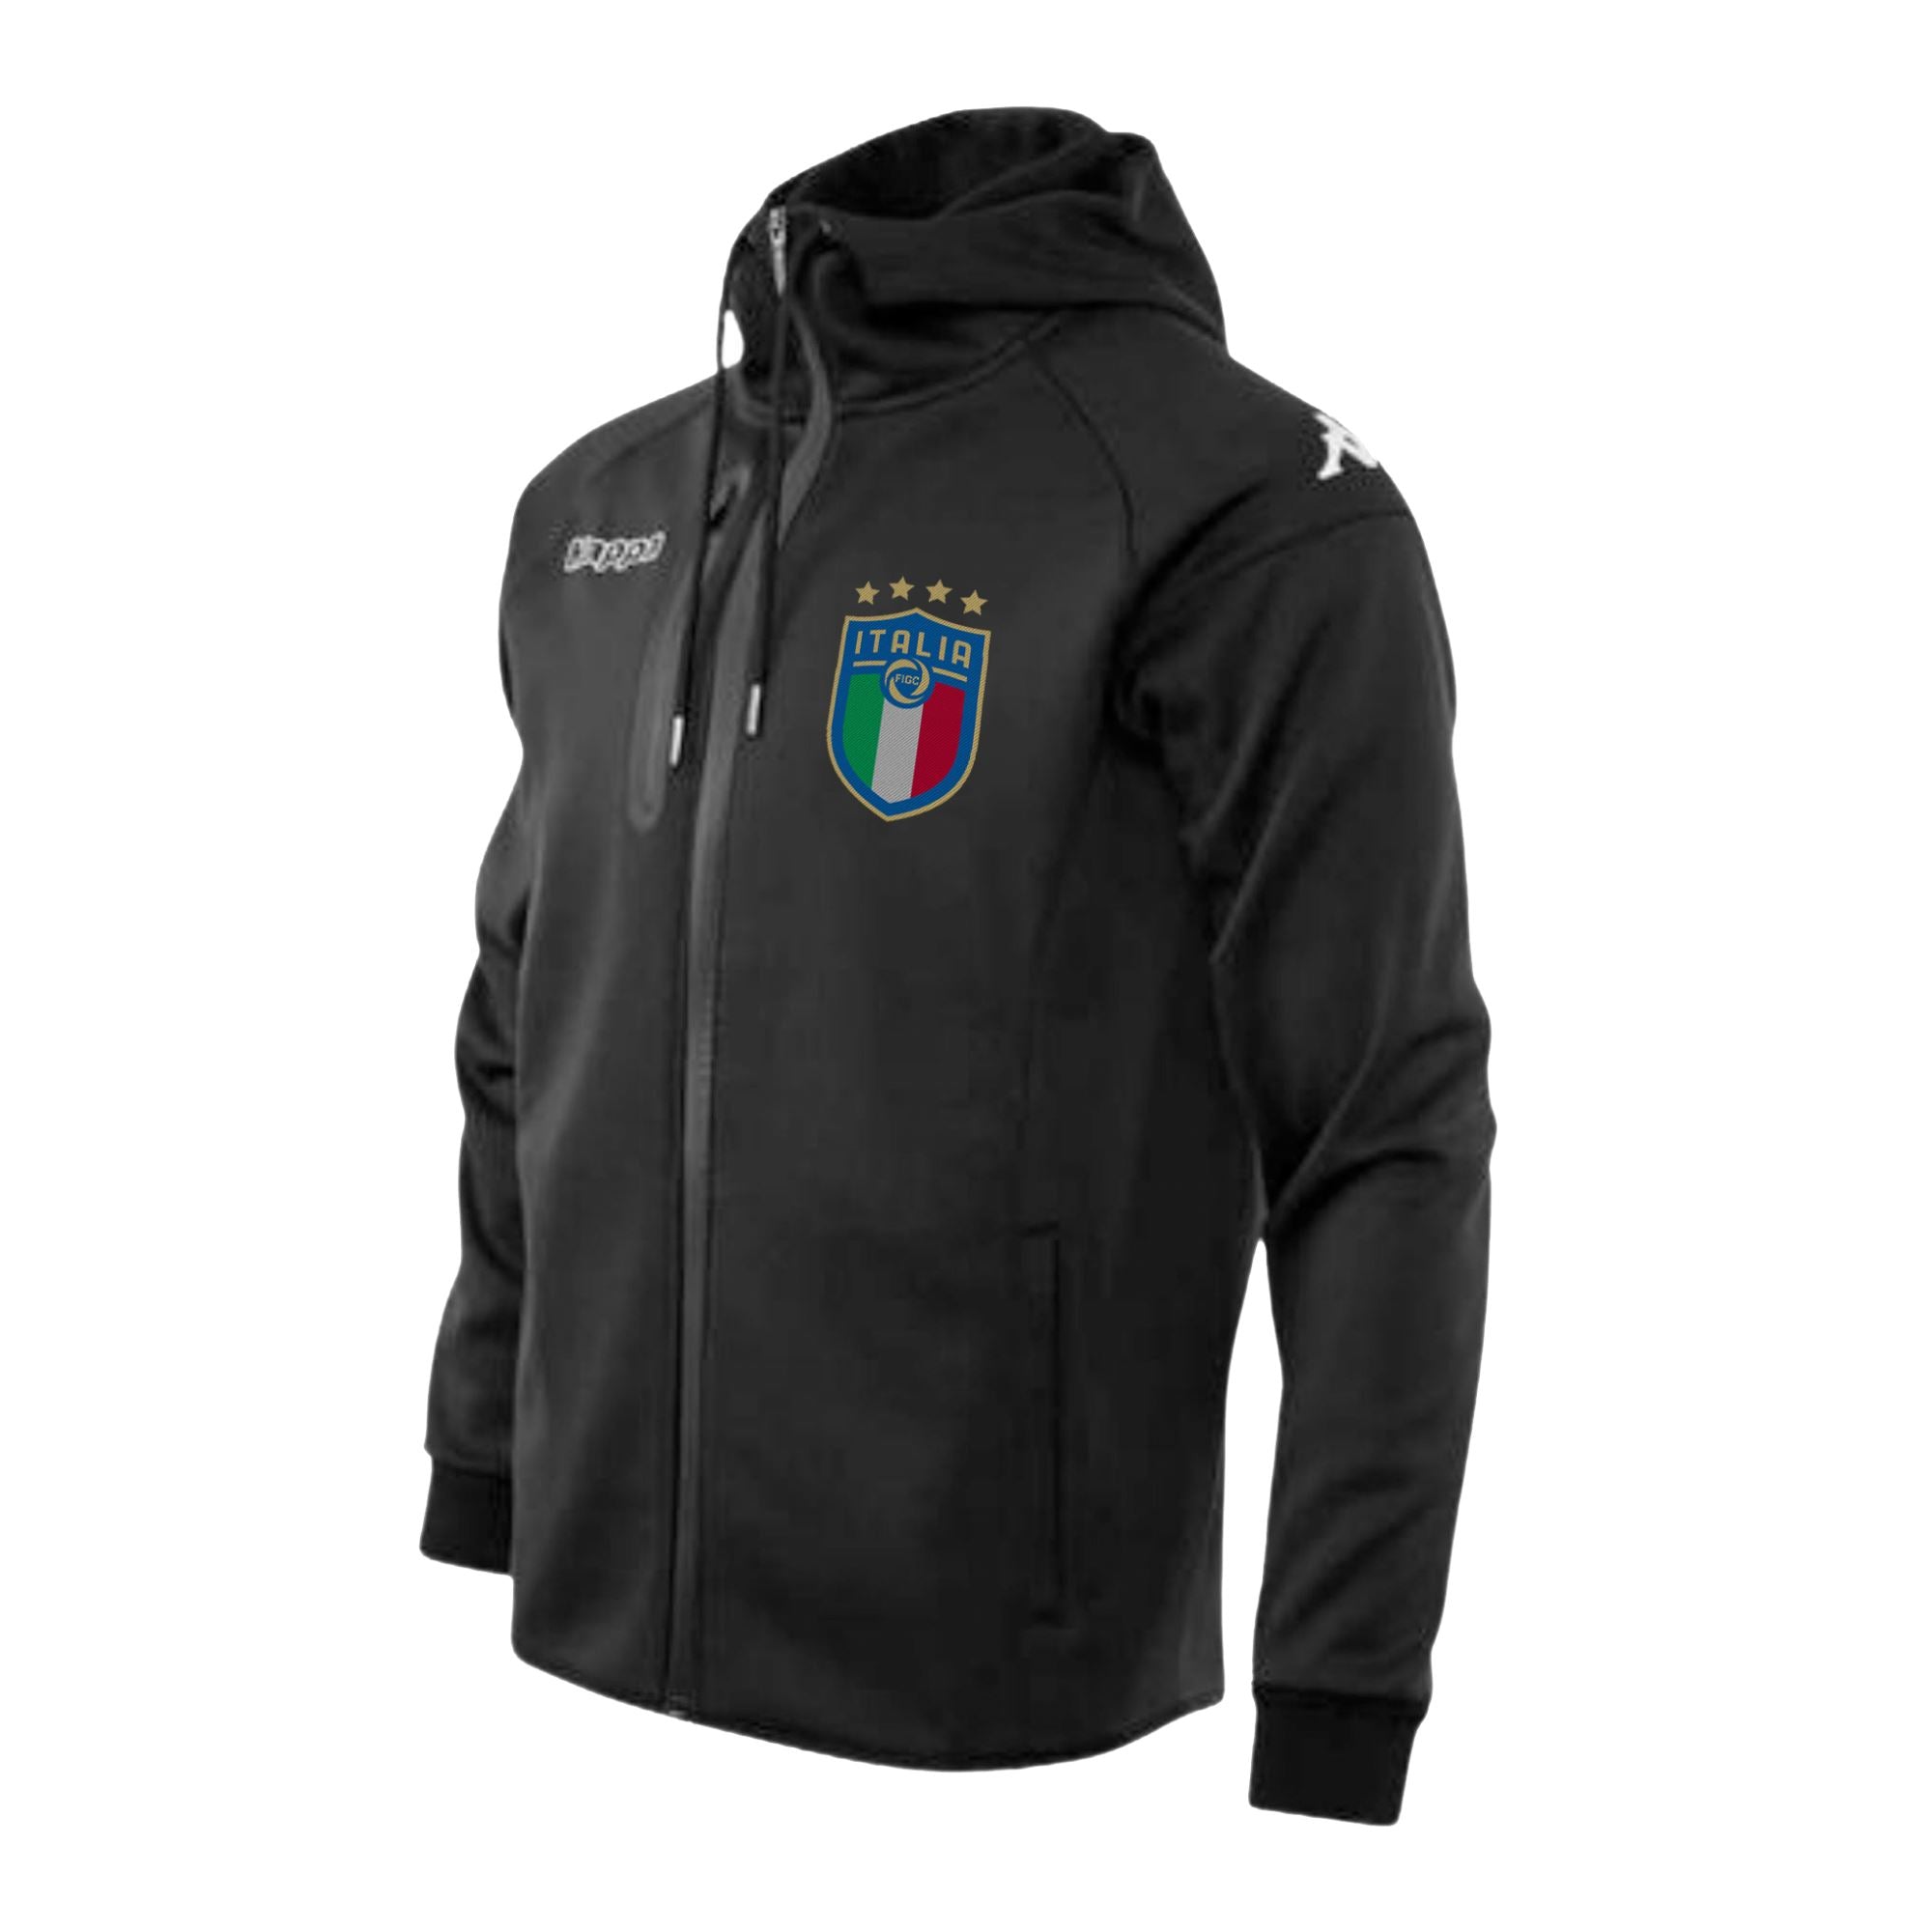 Kappa Italia FIGC Soft Shell Hooded Jacket Black - ITASPORT